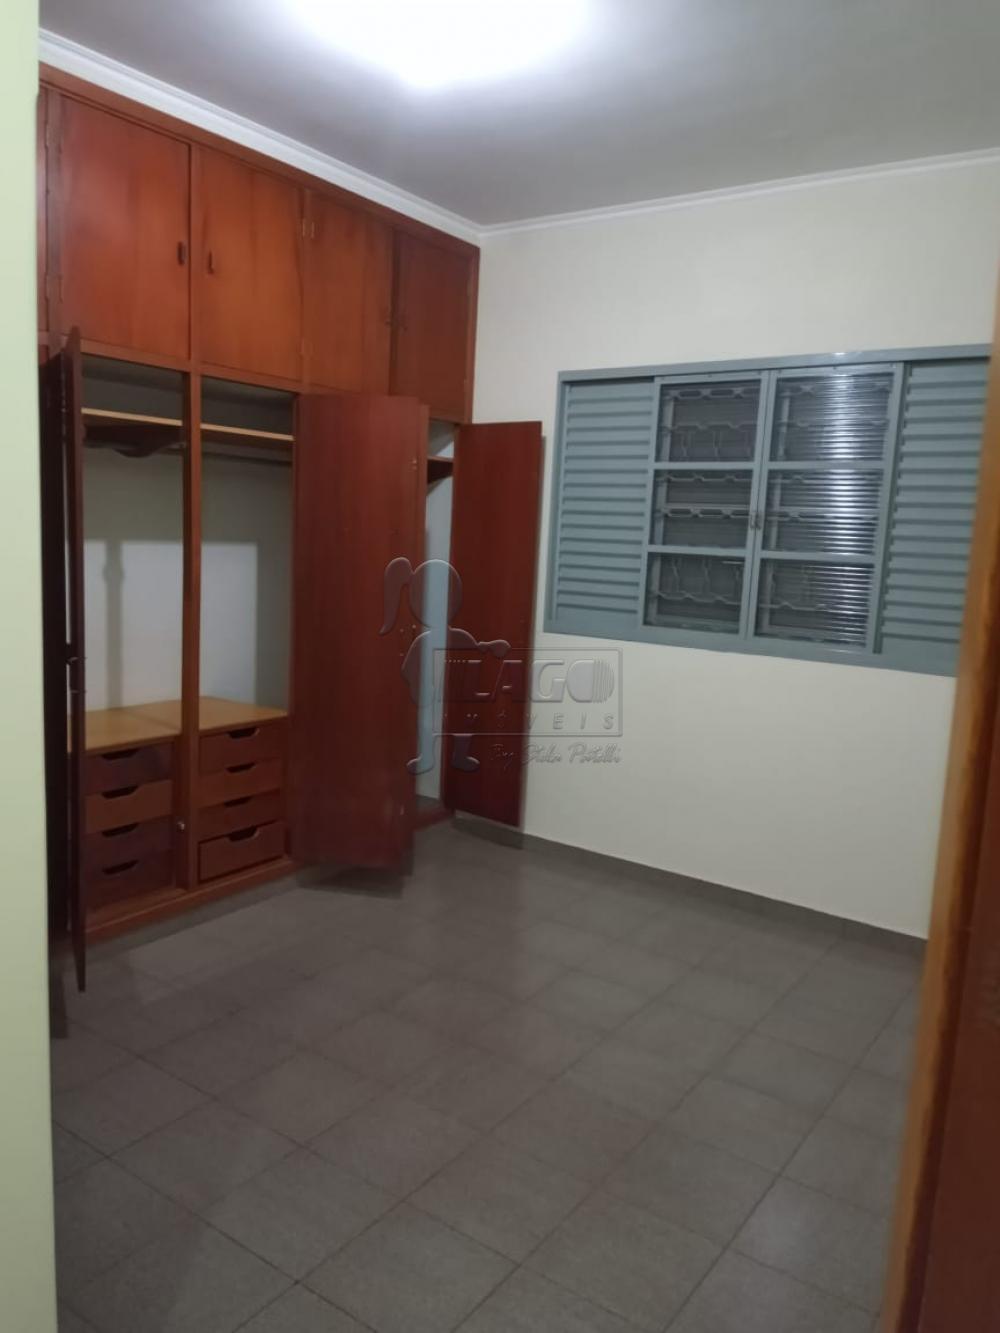 Comprar Casa / Padrão em Ribeirão Preto R$ 310.000,00 - Foto 9